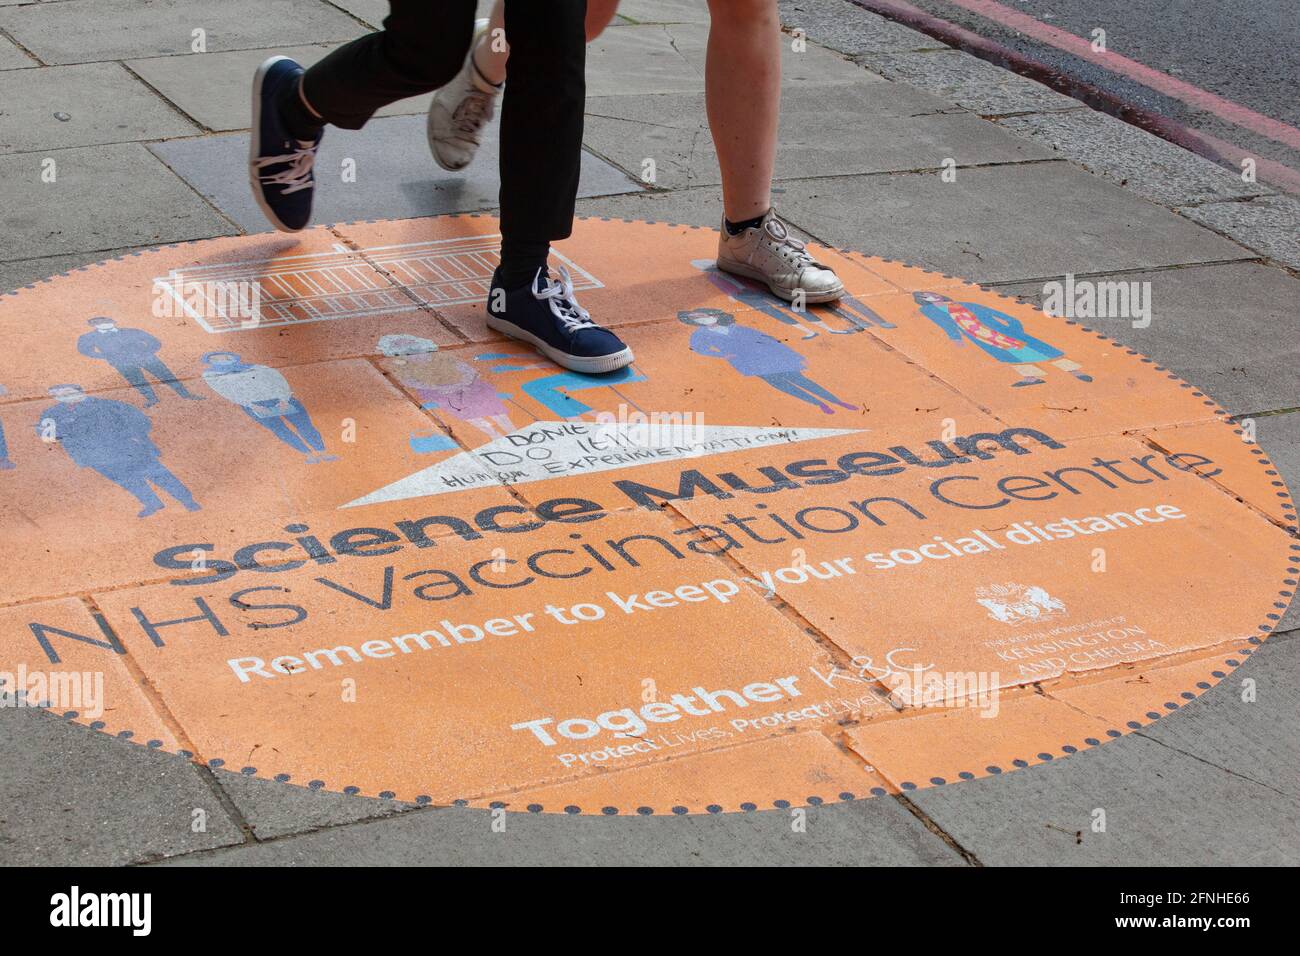 Londres, Royaume-Uni, 17 mai 2021 : un centre de vaccination contre les covidés est ouvert au Musée des sciences. Un des autocollants de rue a été dédallé par un anti-vaxer pour lire "ne pas le faire!! L'expérimentation humaine !!' Anna Watson/Alay Live News Banque D'Images